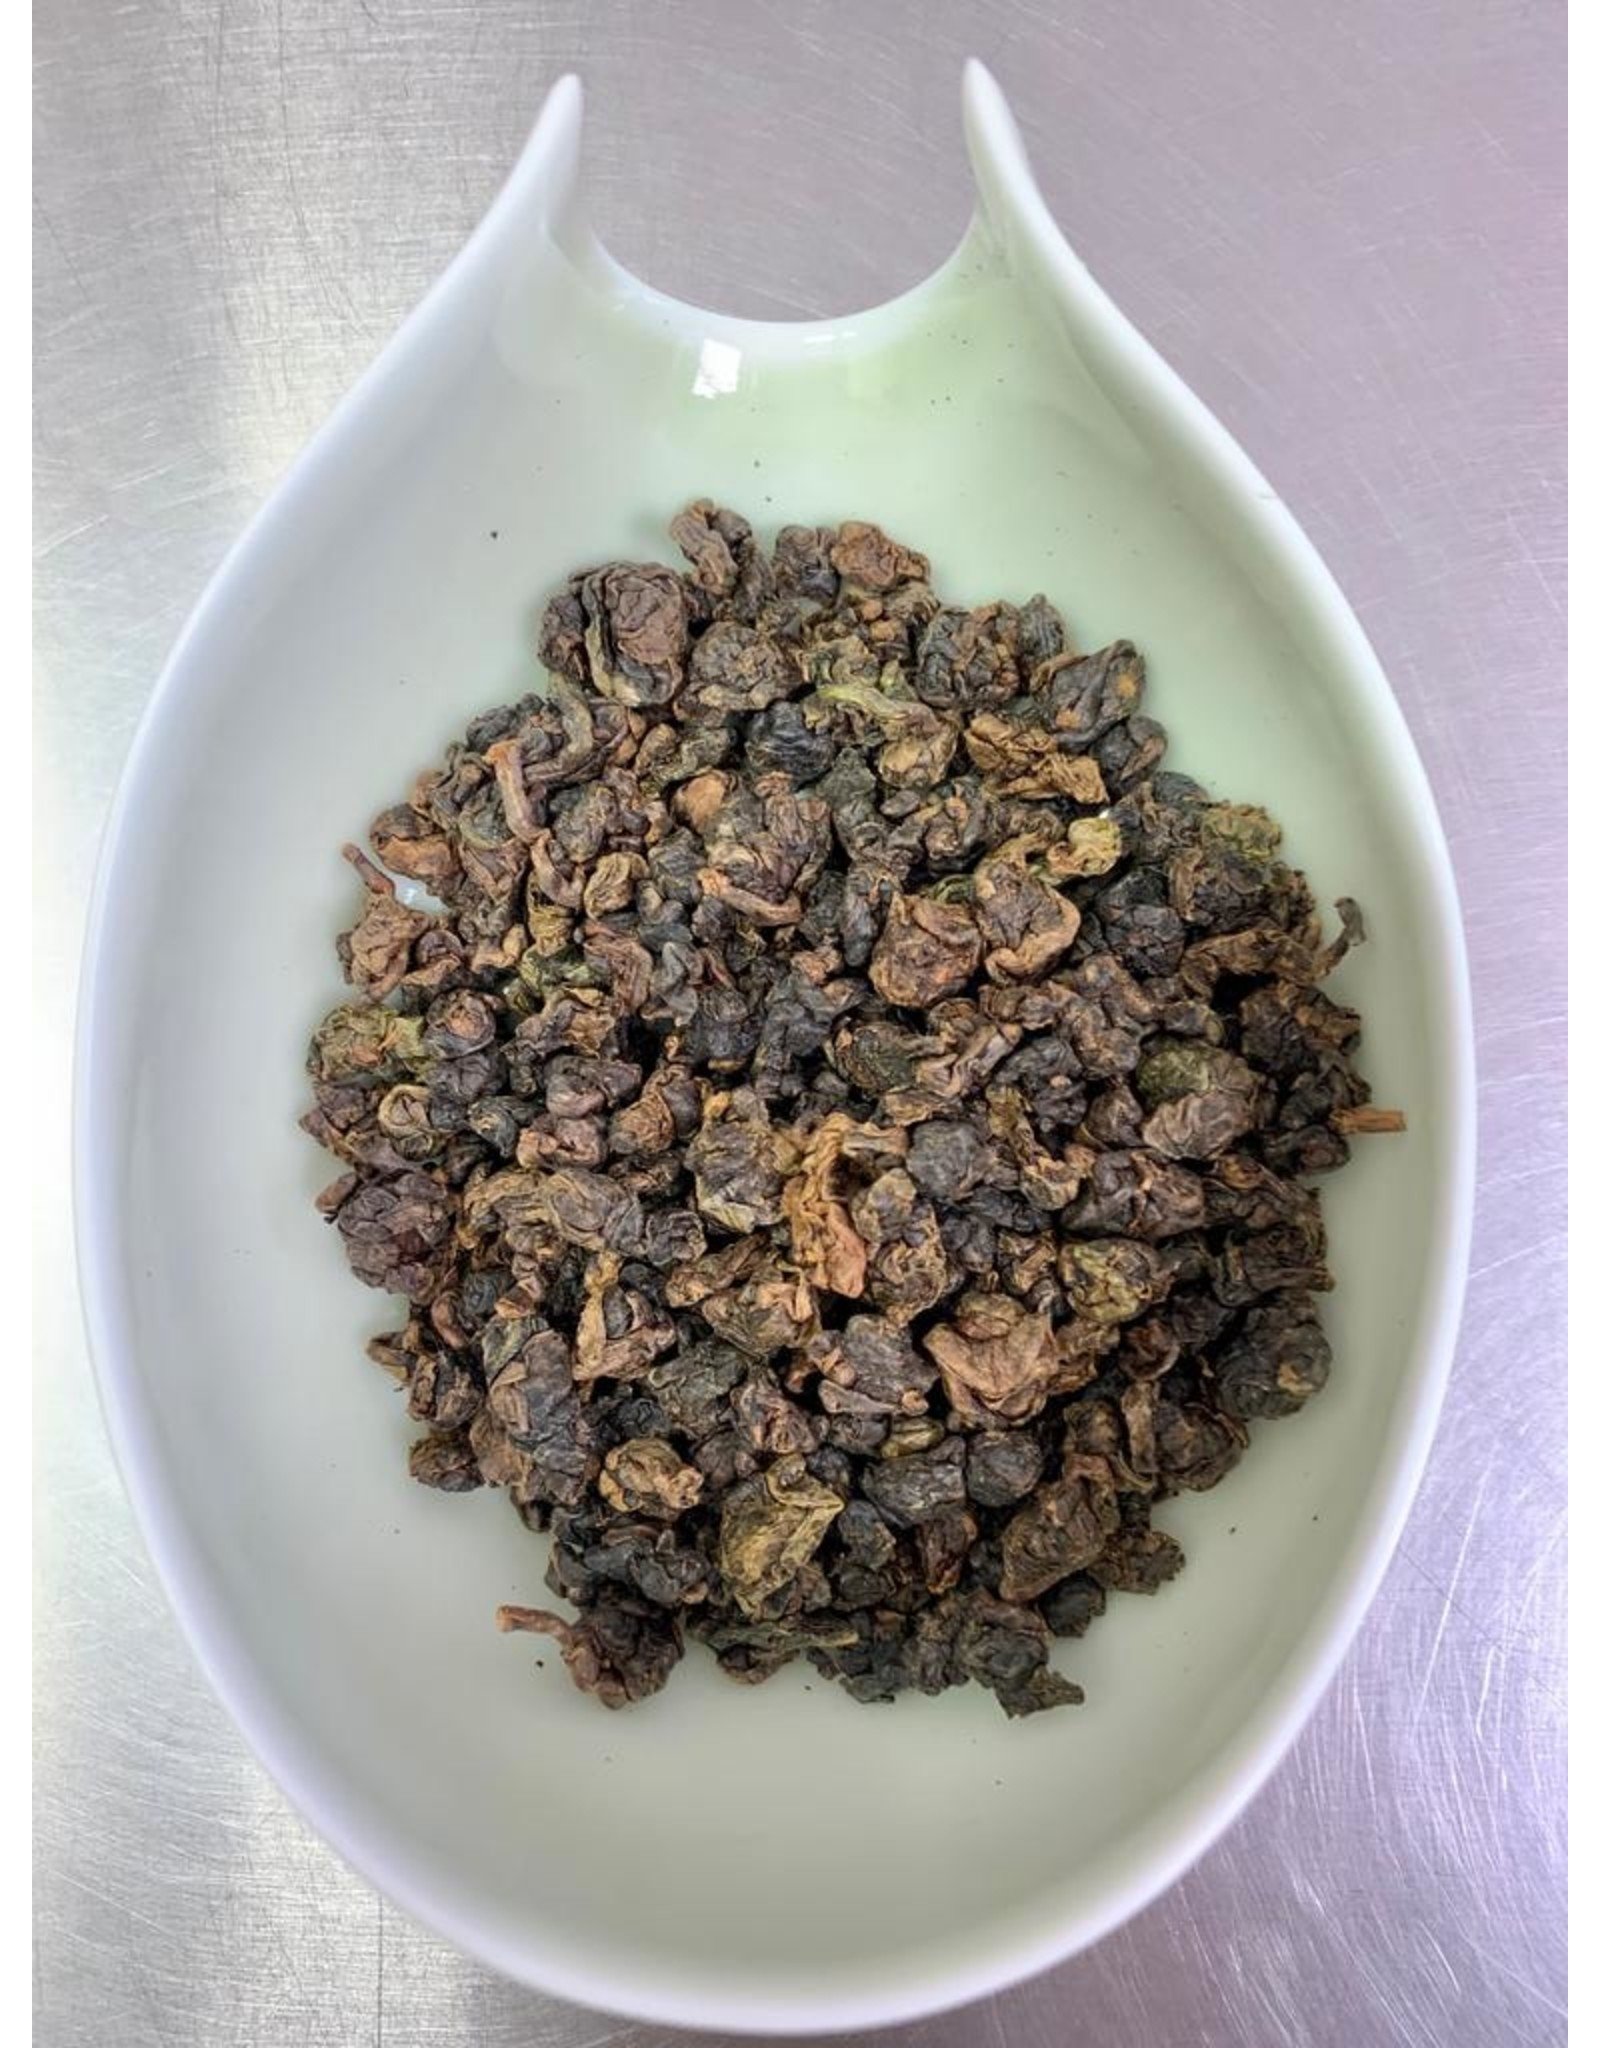 Tea from Taiwan GABA Organic Alishan High-Mountain Oolong Nonpareil Grade